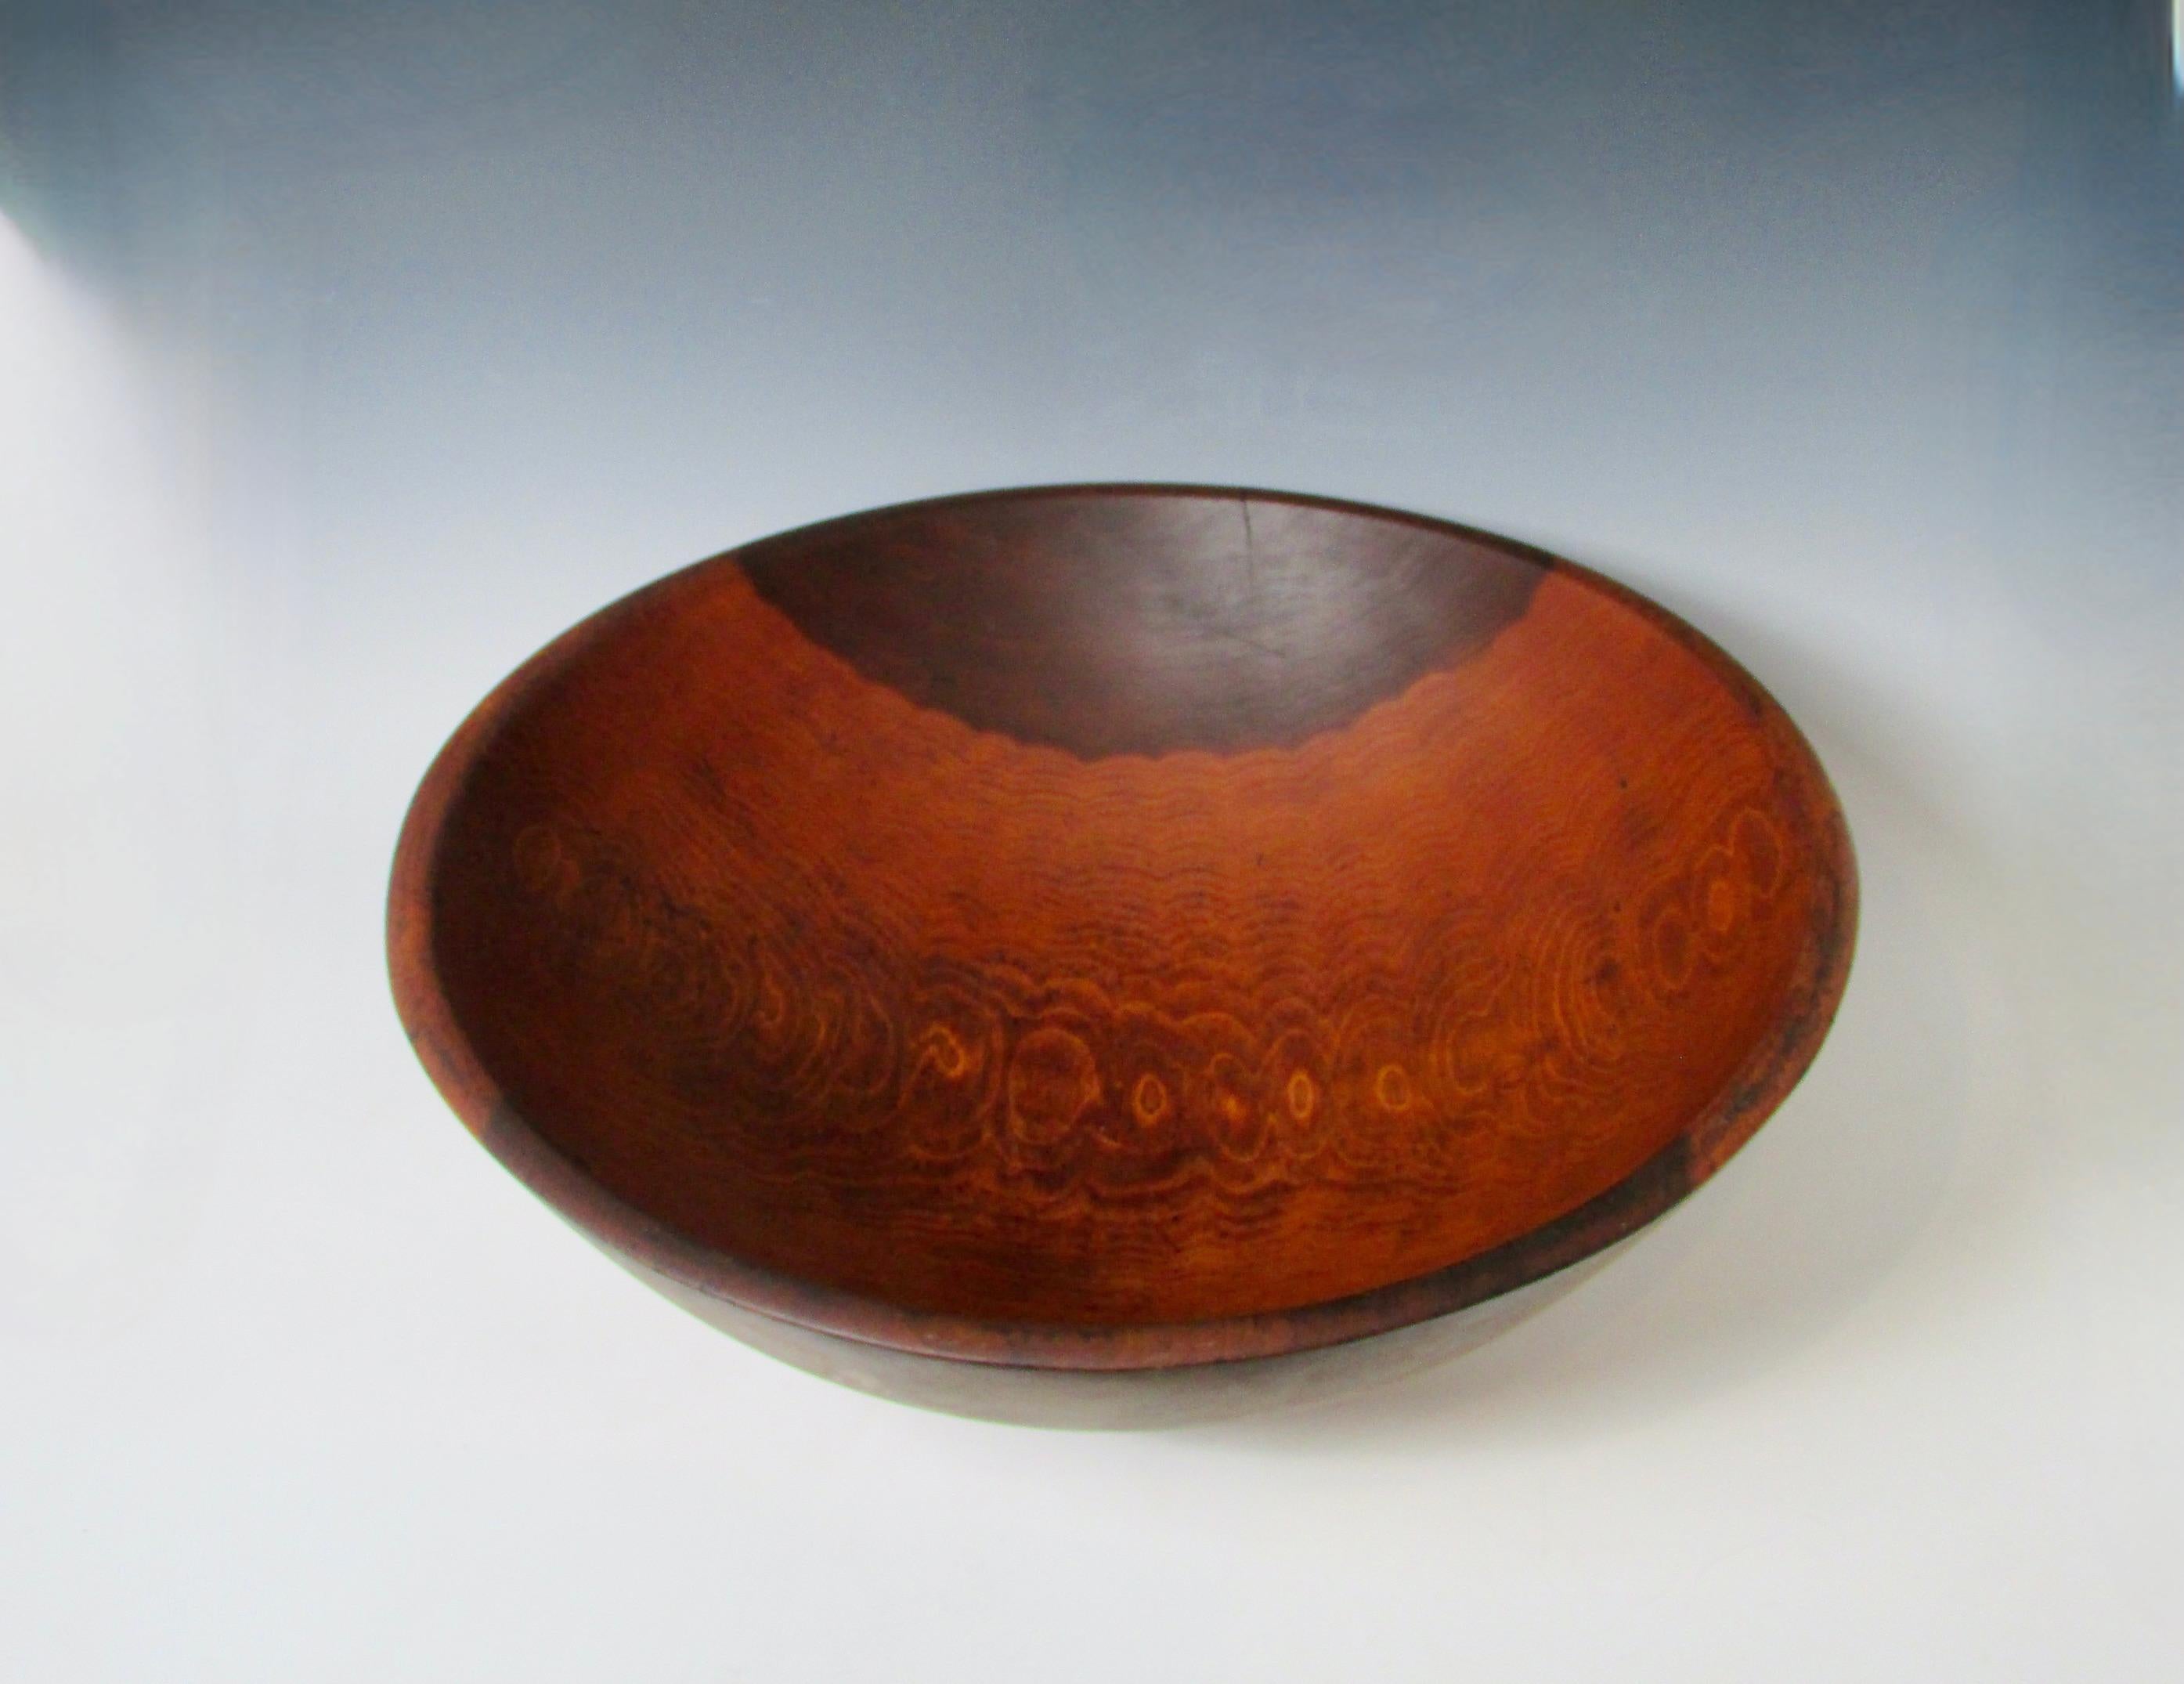 parrish wooden bowls